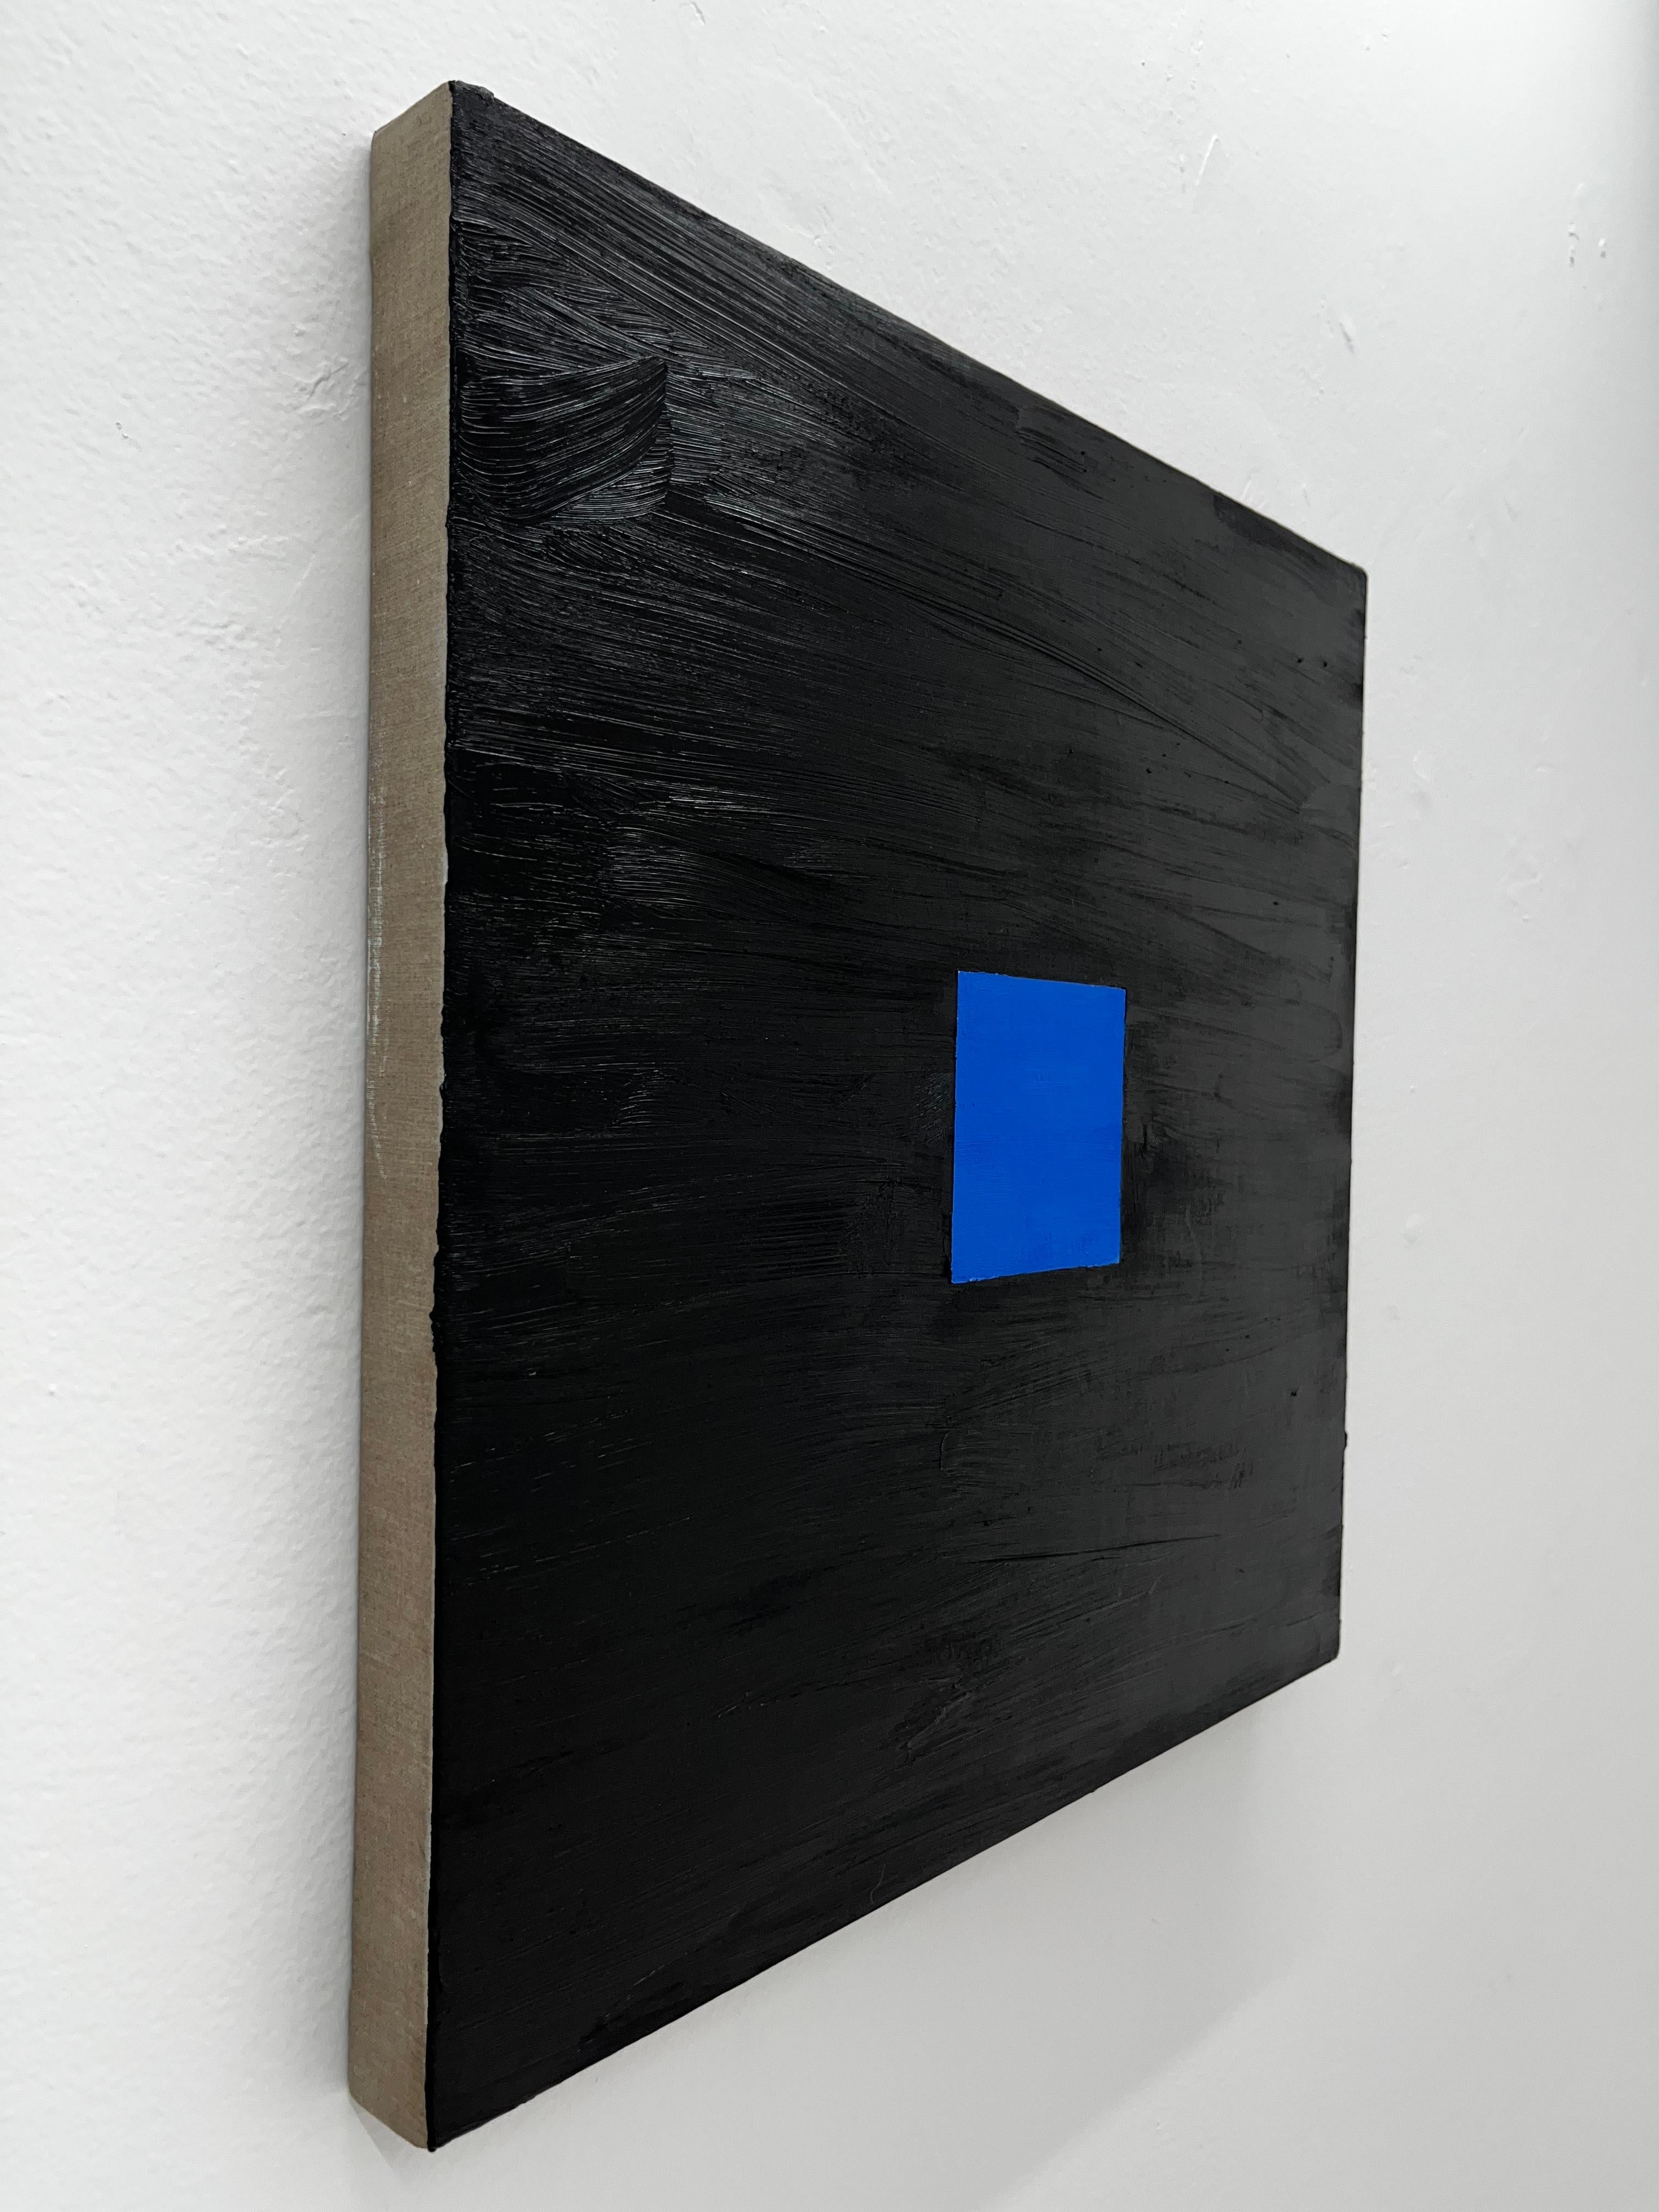 Mit reiner Ölfarbe, die dem Kunstwerk seine einzigartige Textur verleiht, gelingt es dem Künstler, zwei besonders schwierig zu bearbeitende Farben zu verwenden: Schwarz und Blau. 

Dieses Kunstwerk ist Teil der Ausstellung 